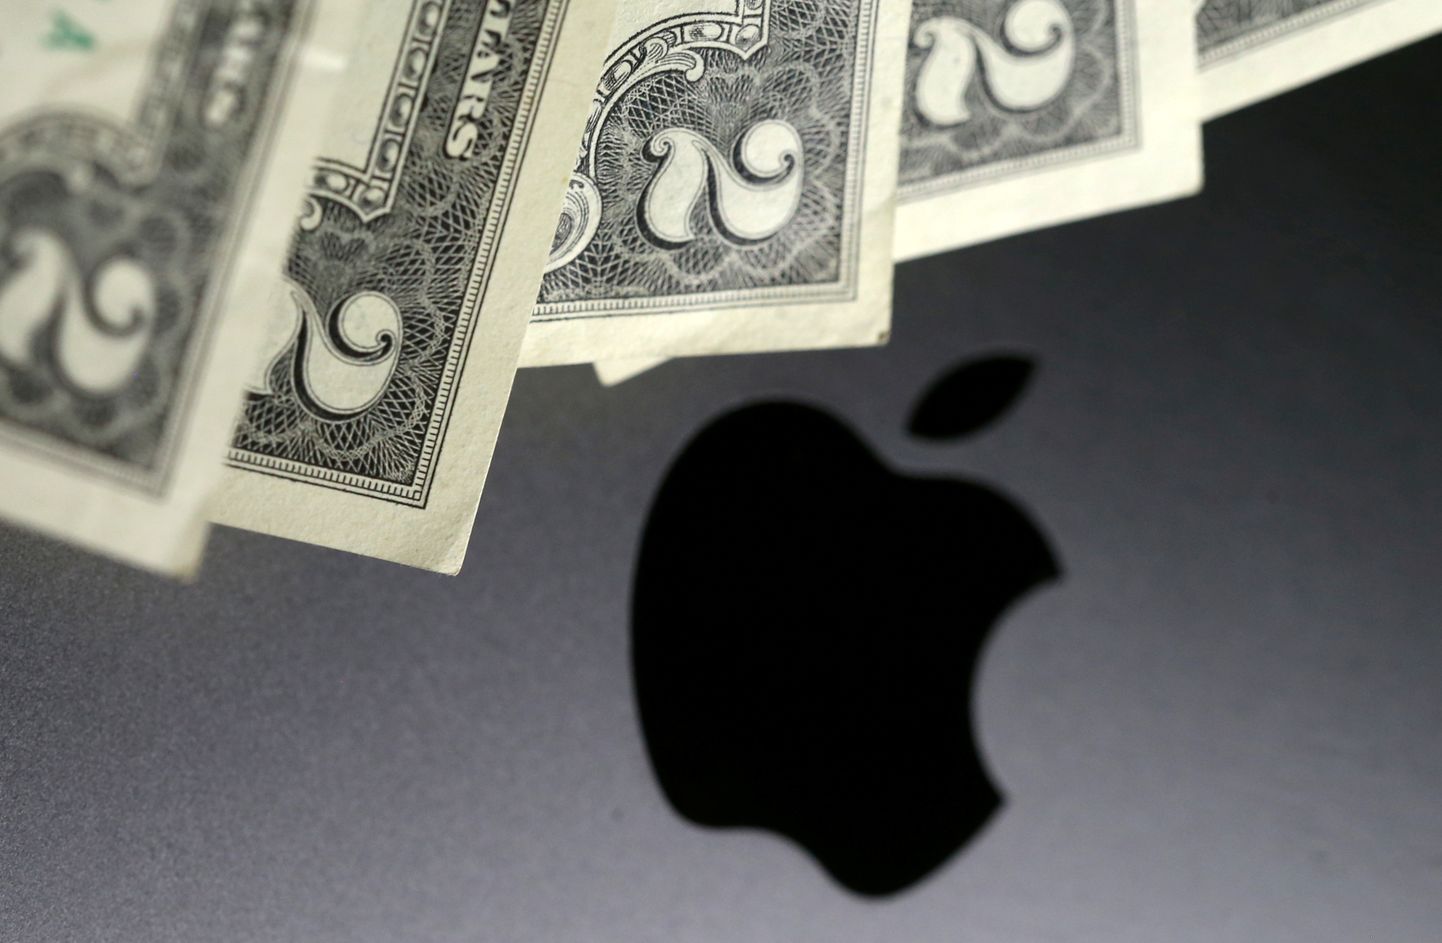 Maailma kõige kallimate brändide edetabeli esikohale kerkis pärast mitmeid aastaid taas Apple.